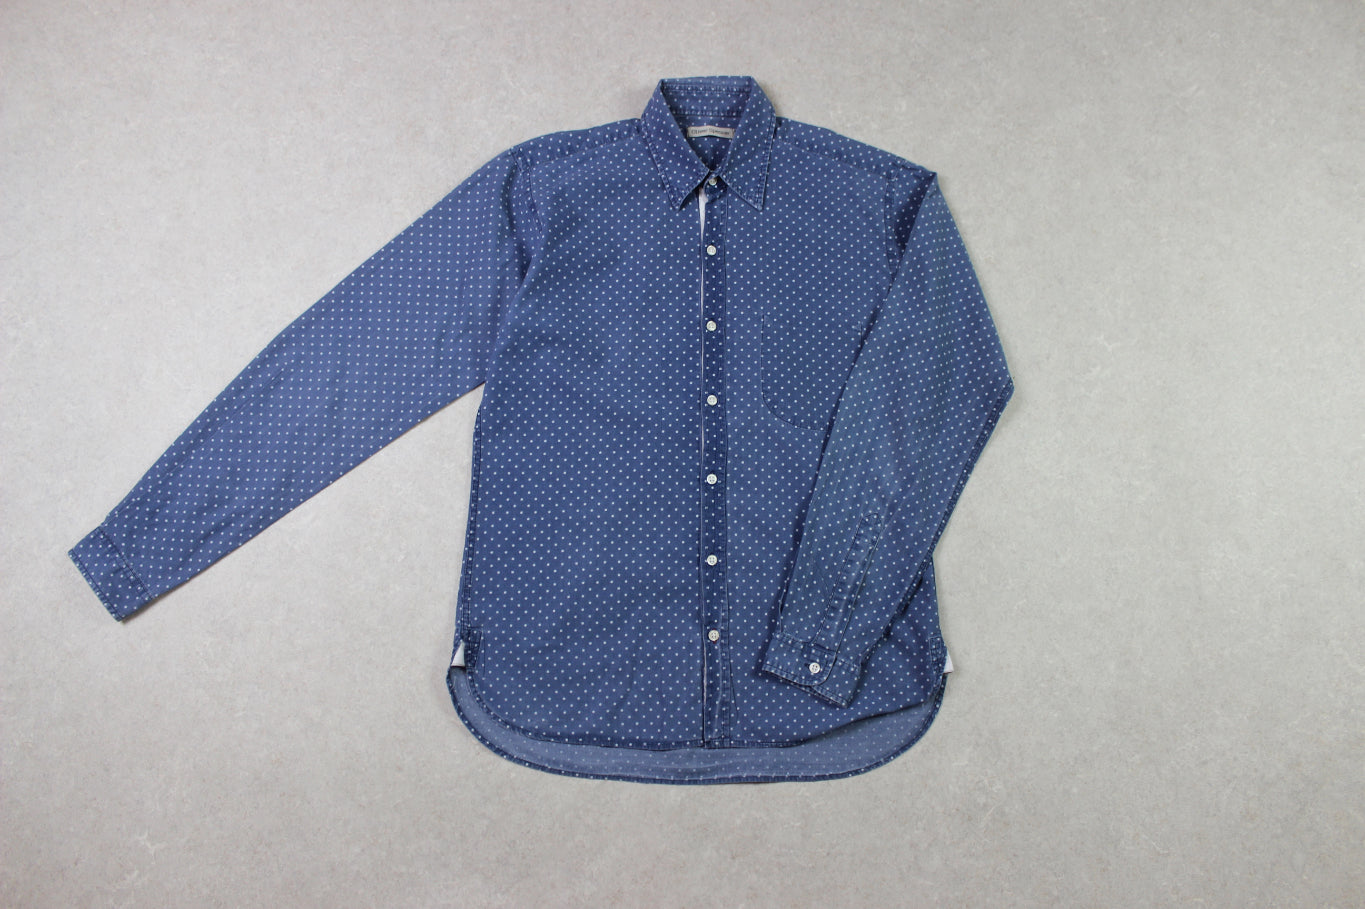 Oliver Spencer - Shirt - Blue/White Polka Dot - 15/38/Small